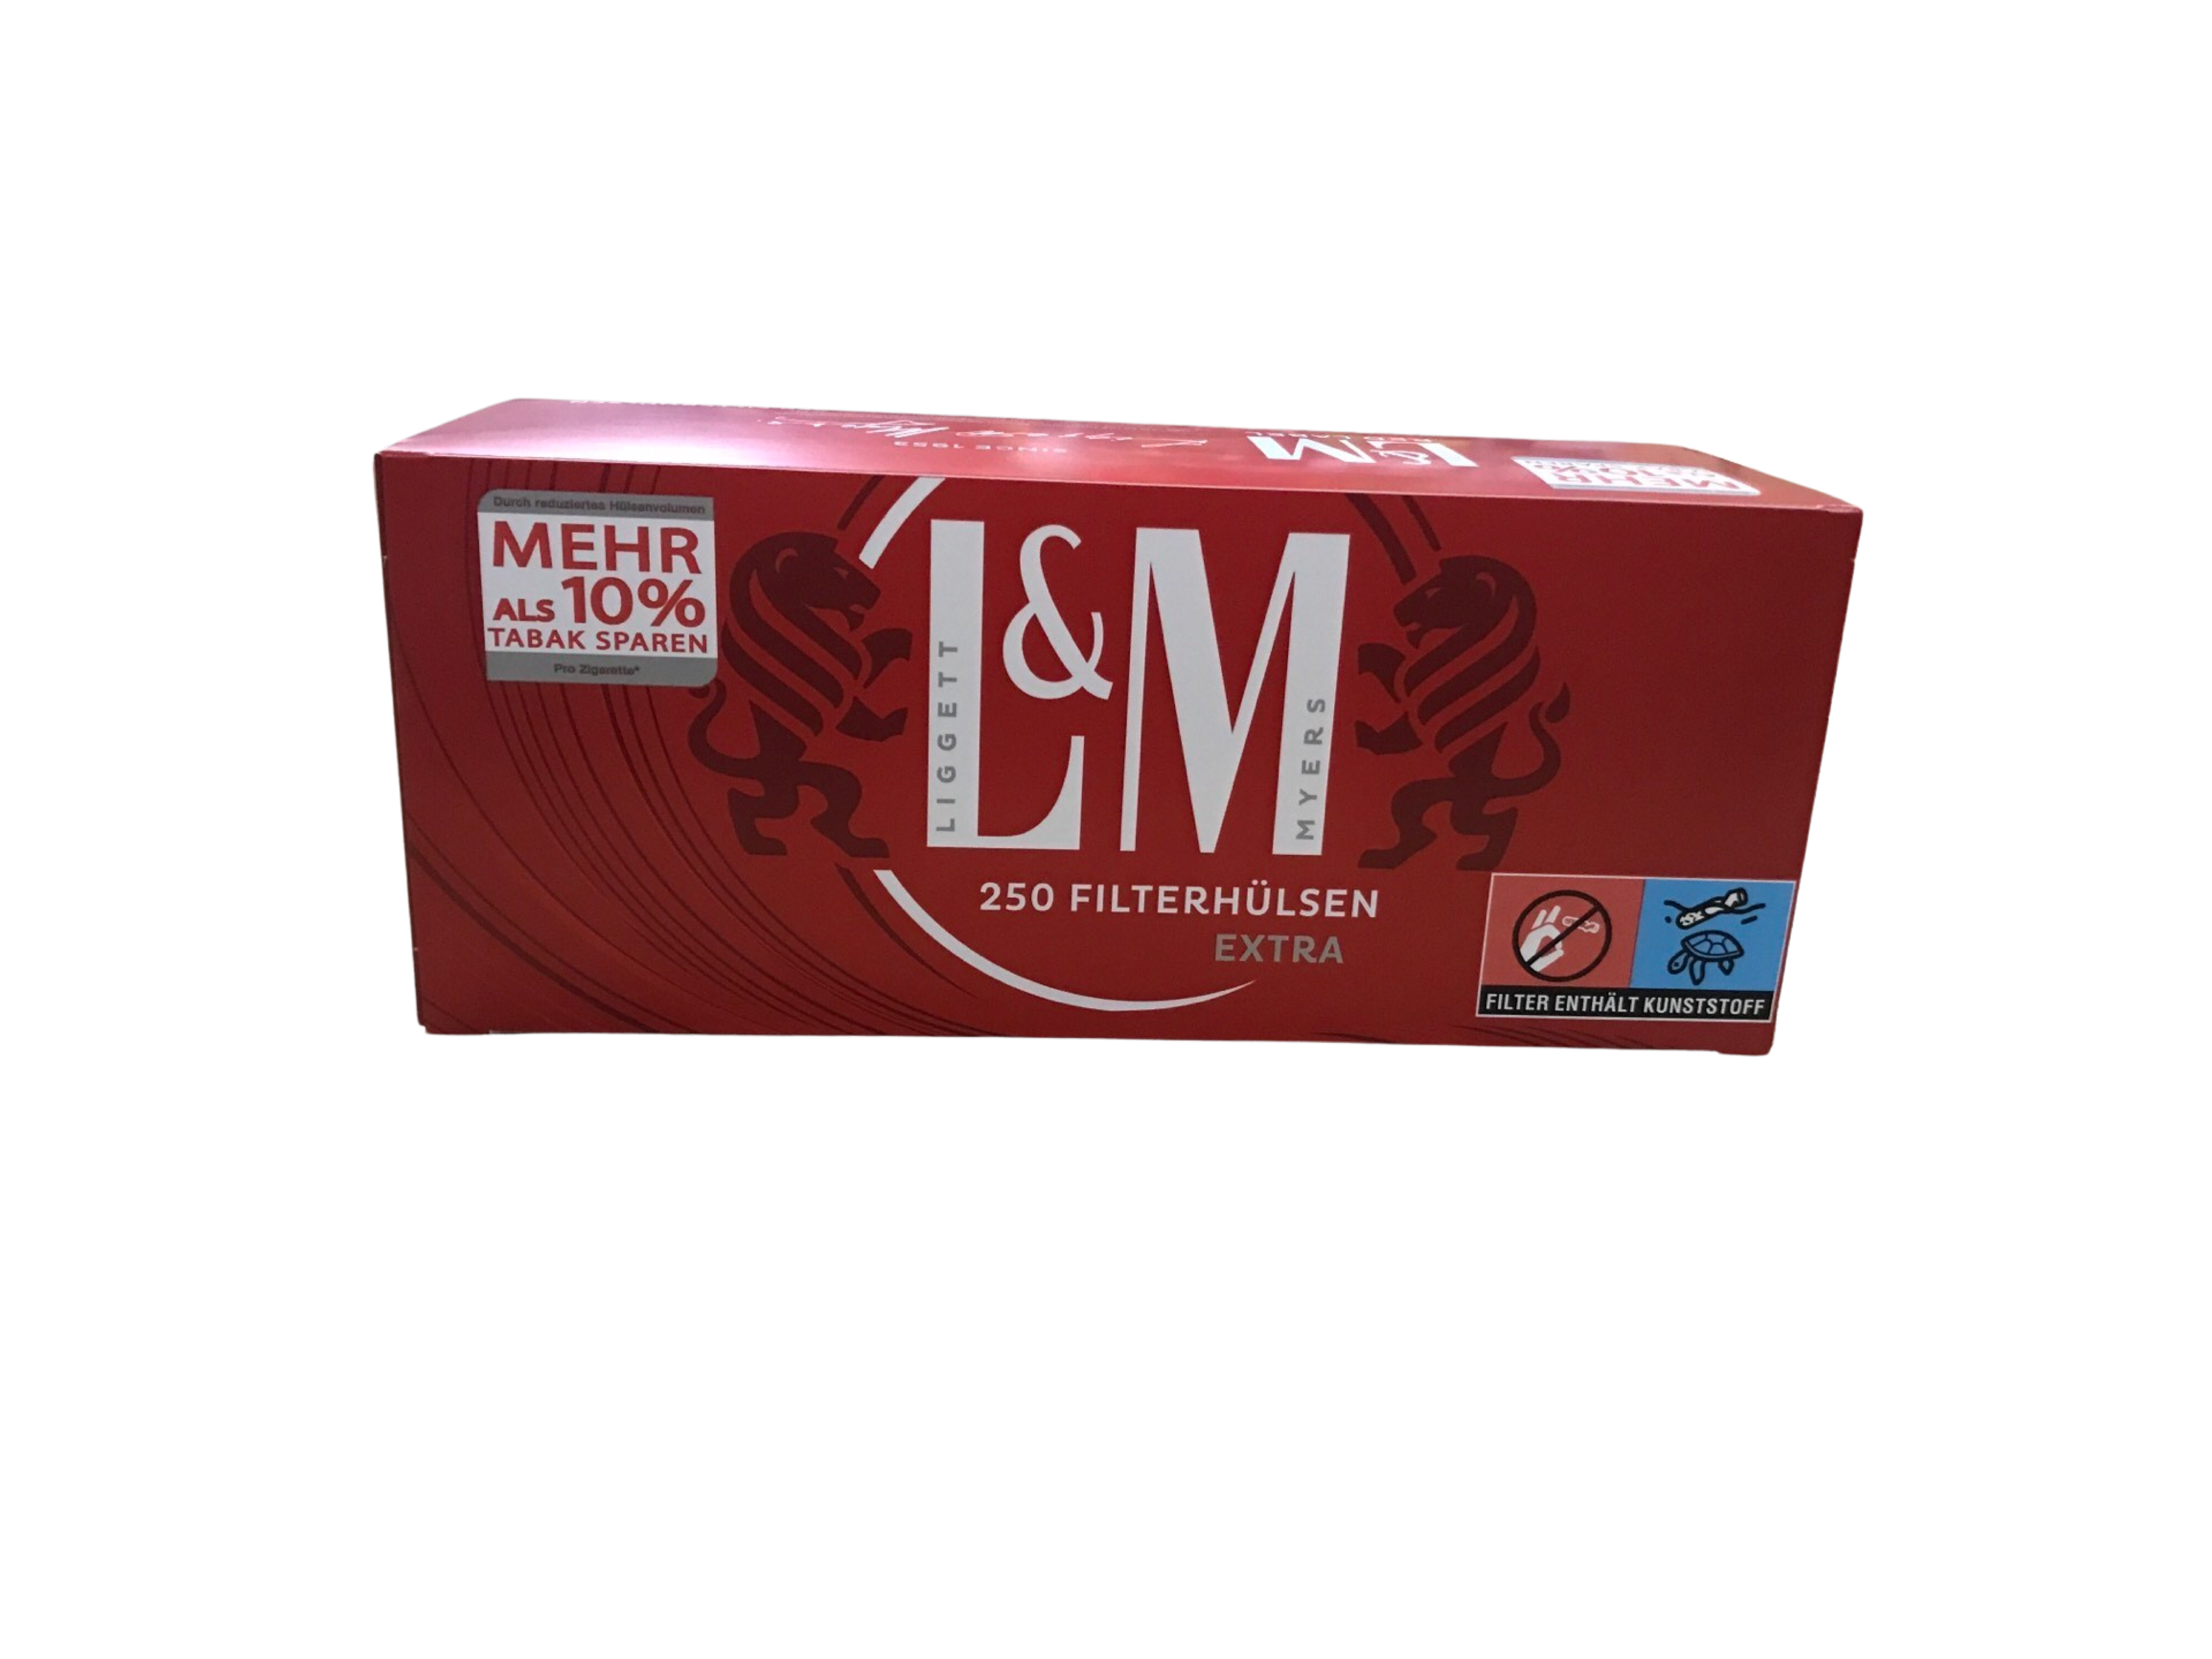 L&M Extra Filterhülsen Red Label 250 Stück